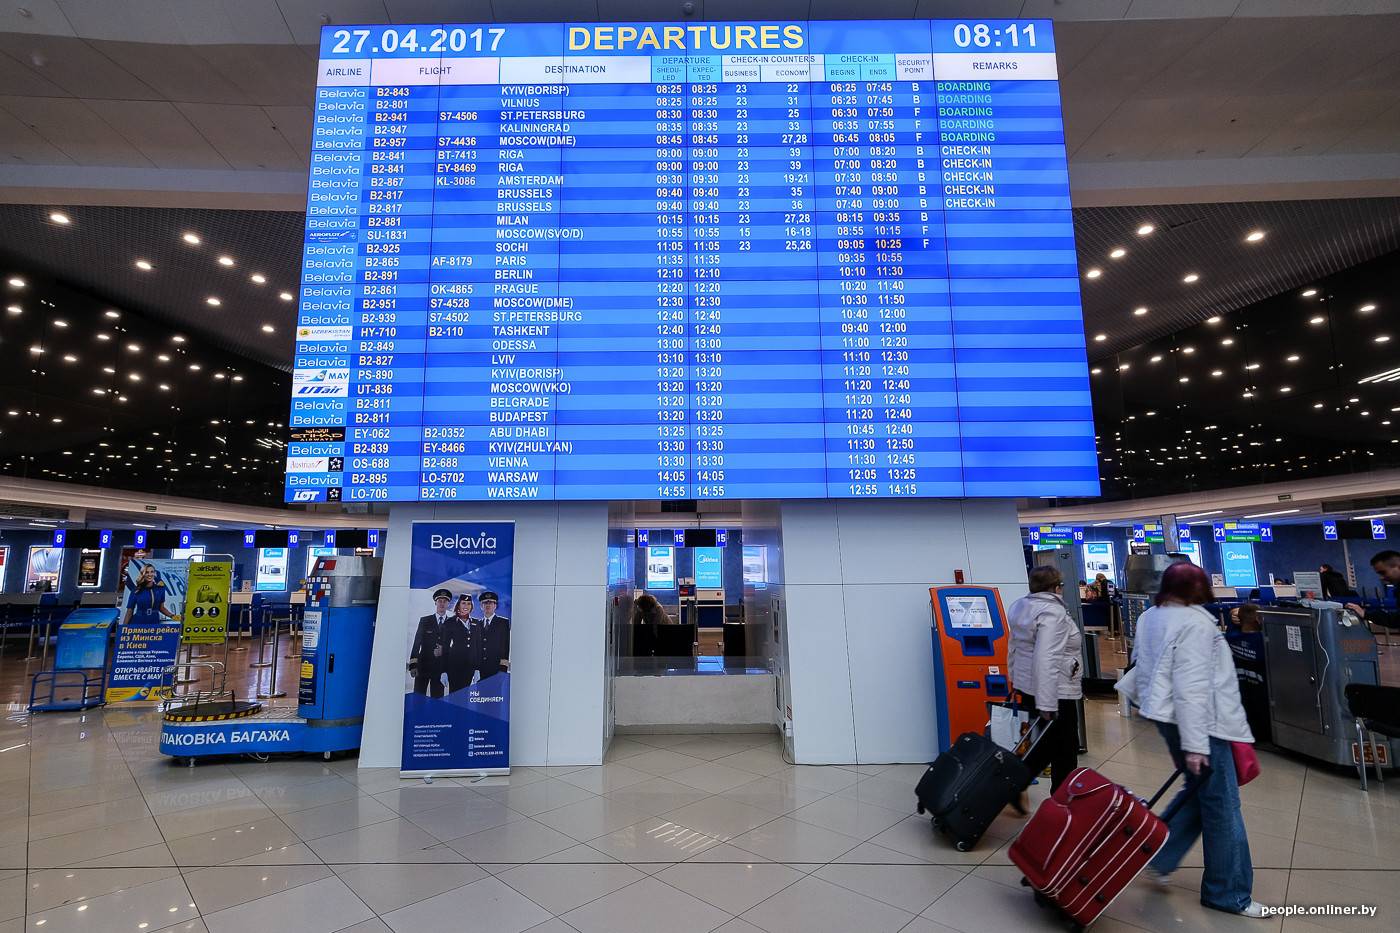 Аэропорт внуково, онлайн табло с расписанием прилета, вылета vko